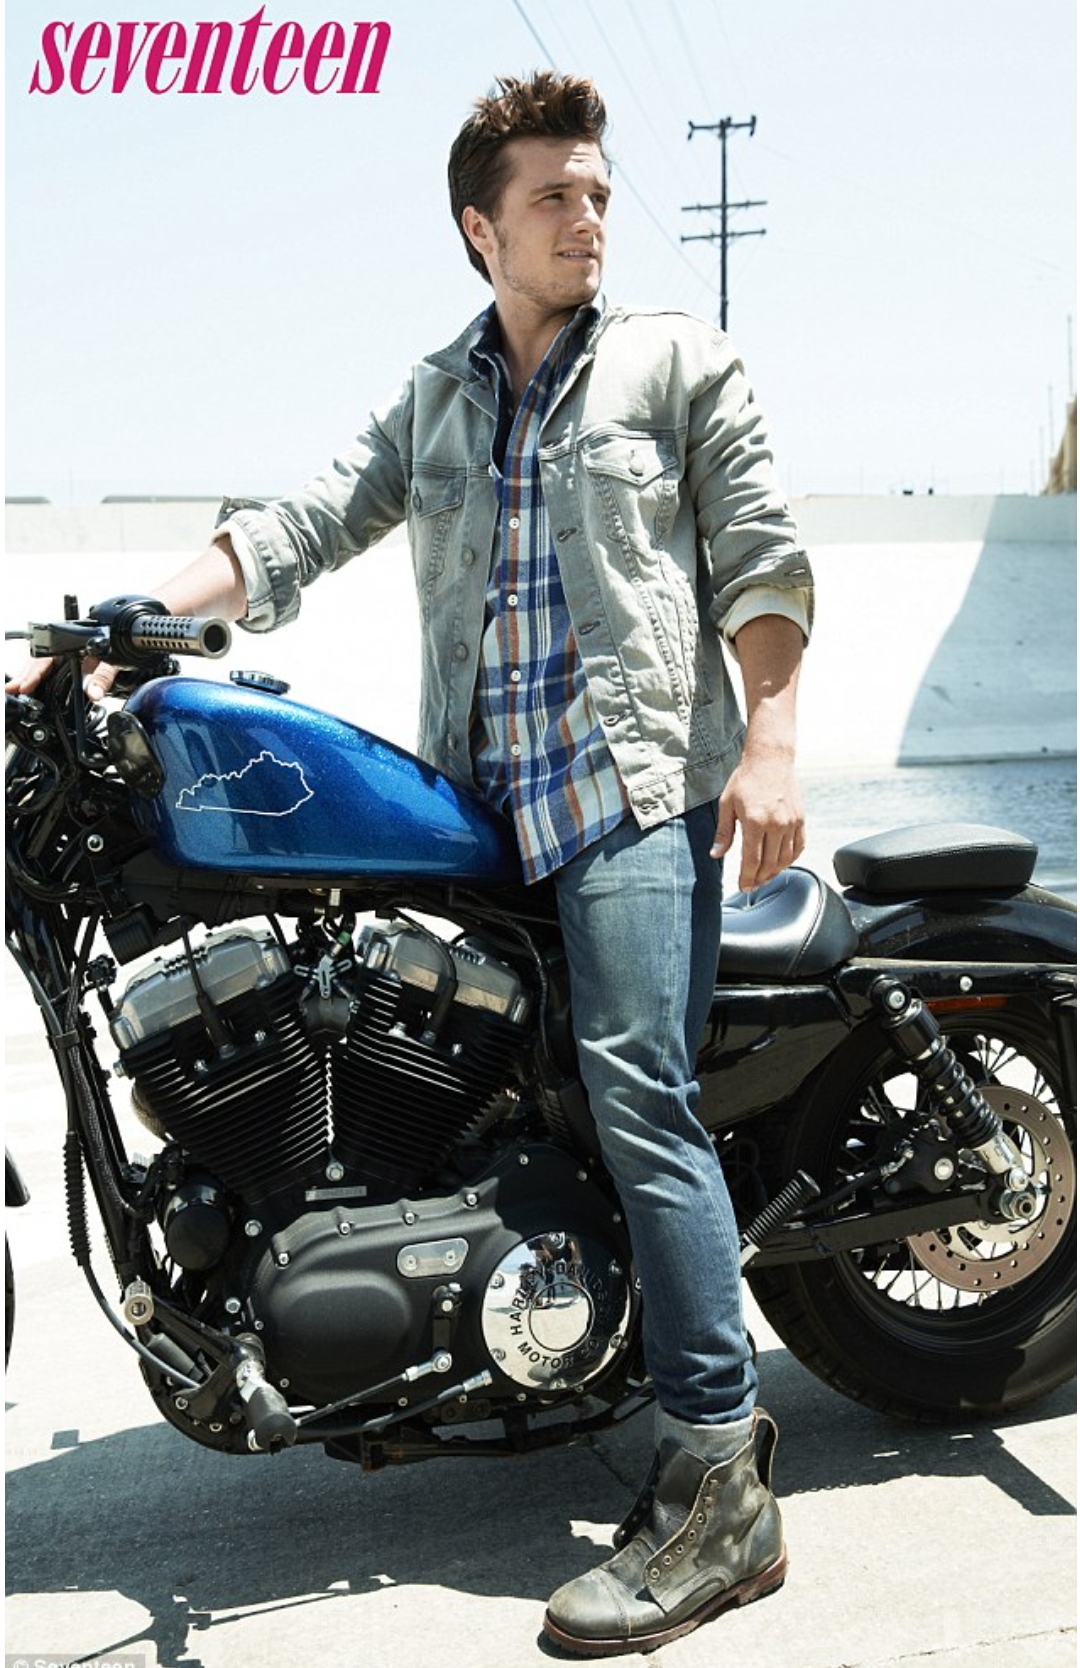 General photo of Josh Hutcherson